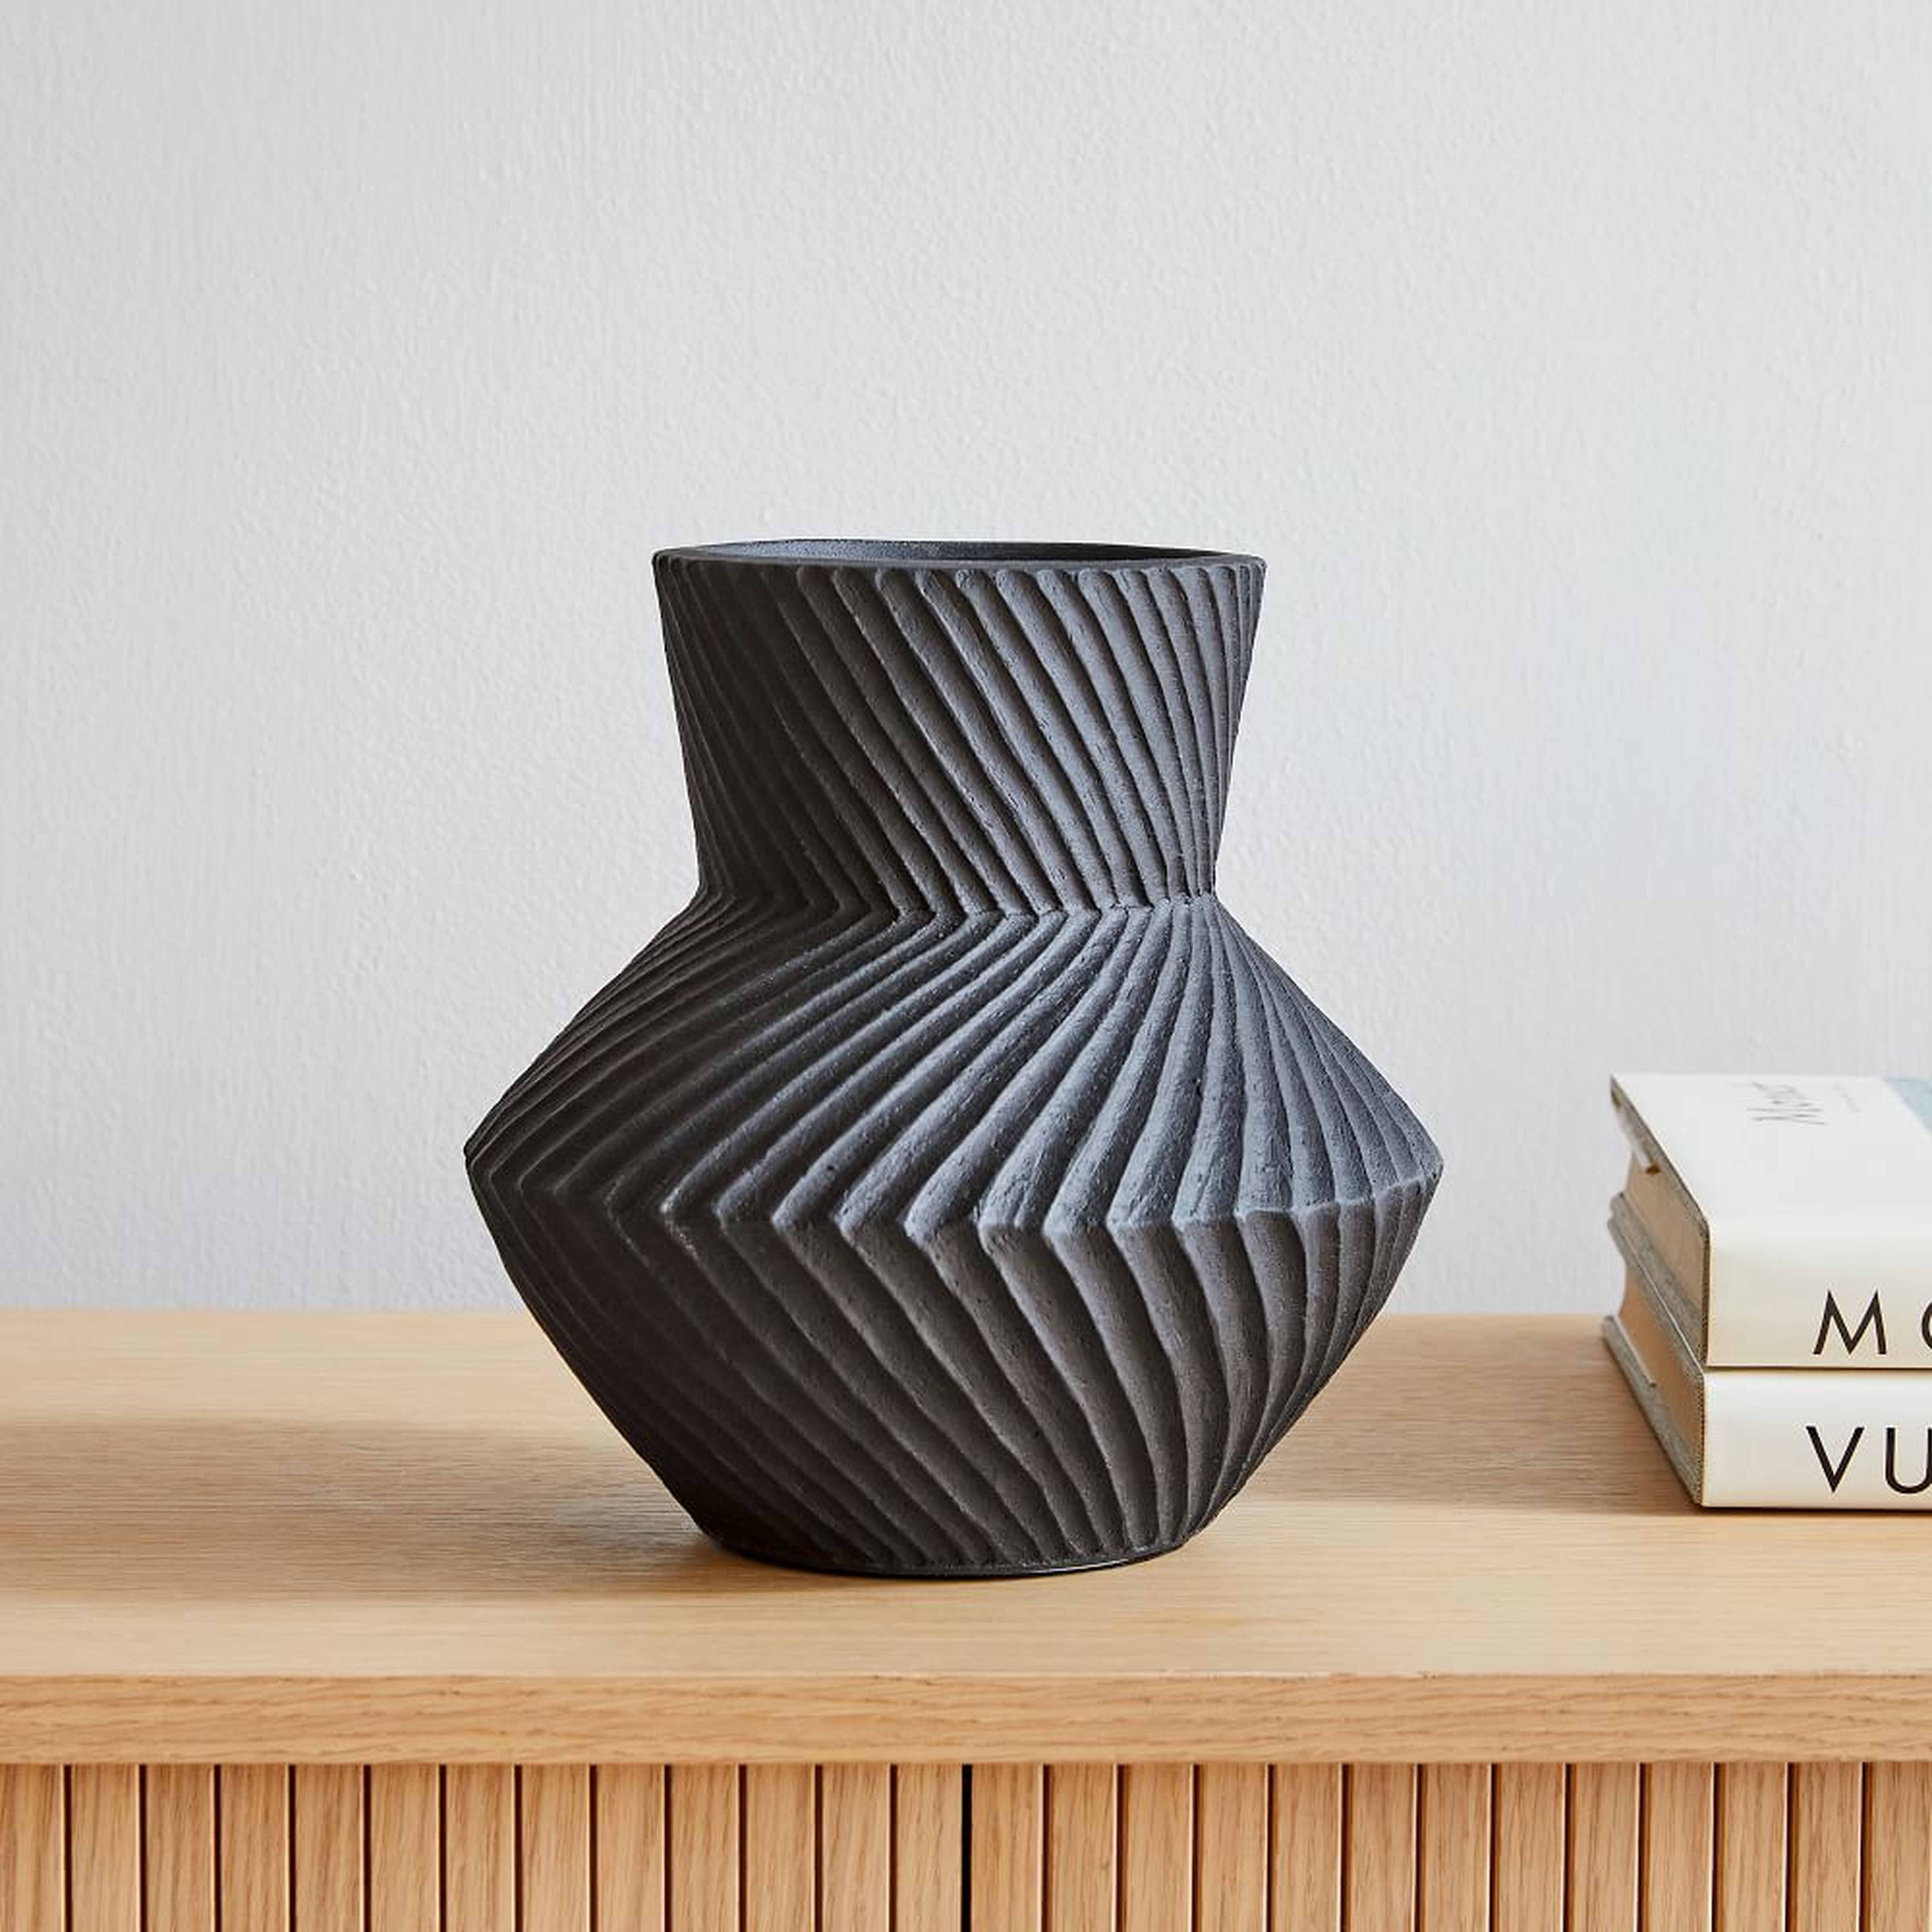 Asher Ceramic Tabletop Vases, Vase, Black, Earthenware, Medium - West Elm